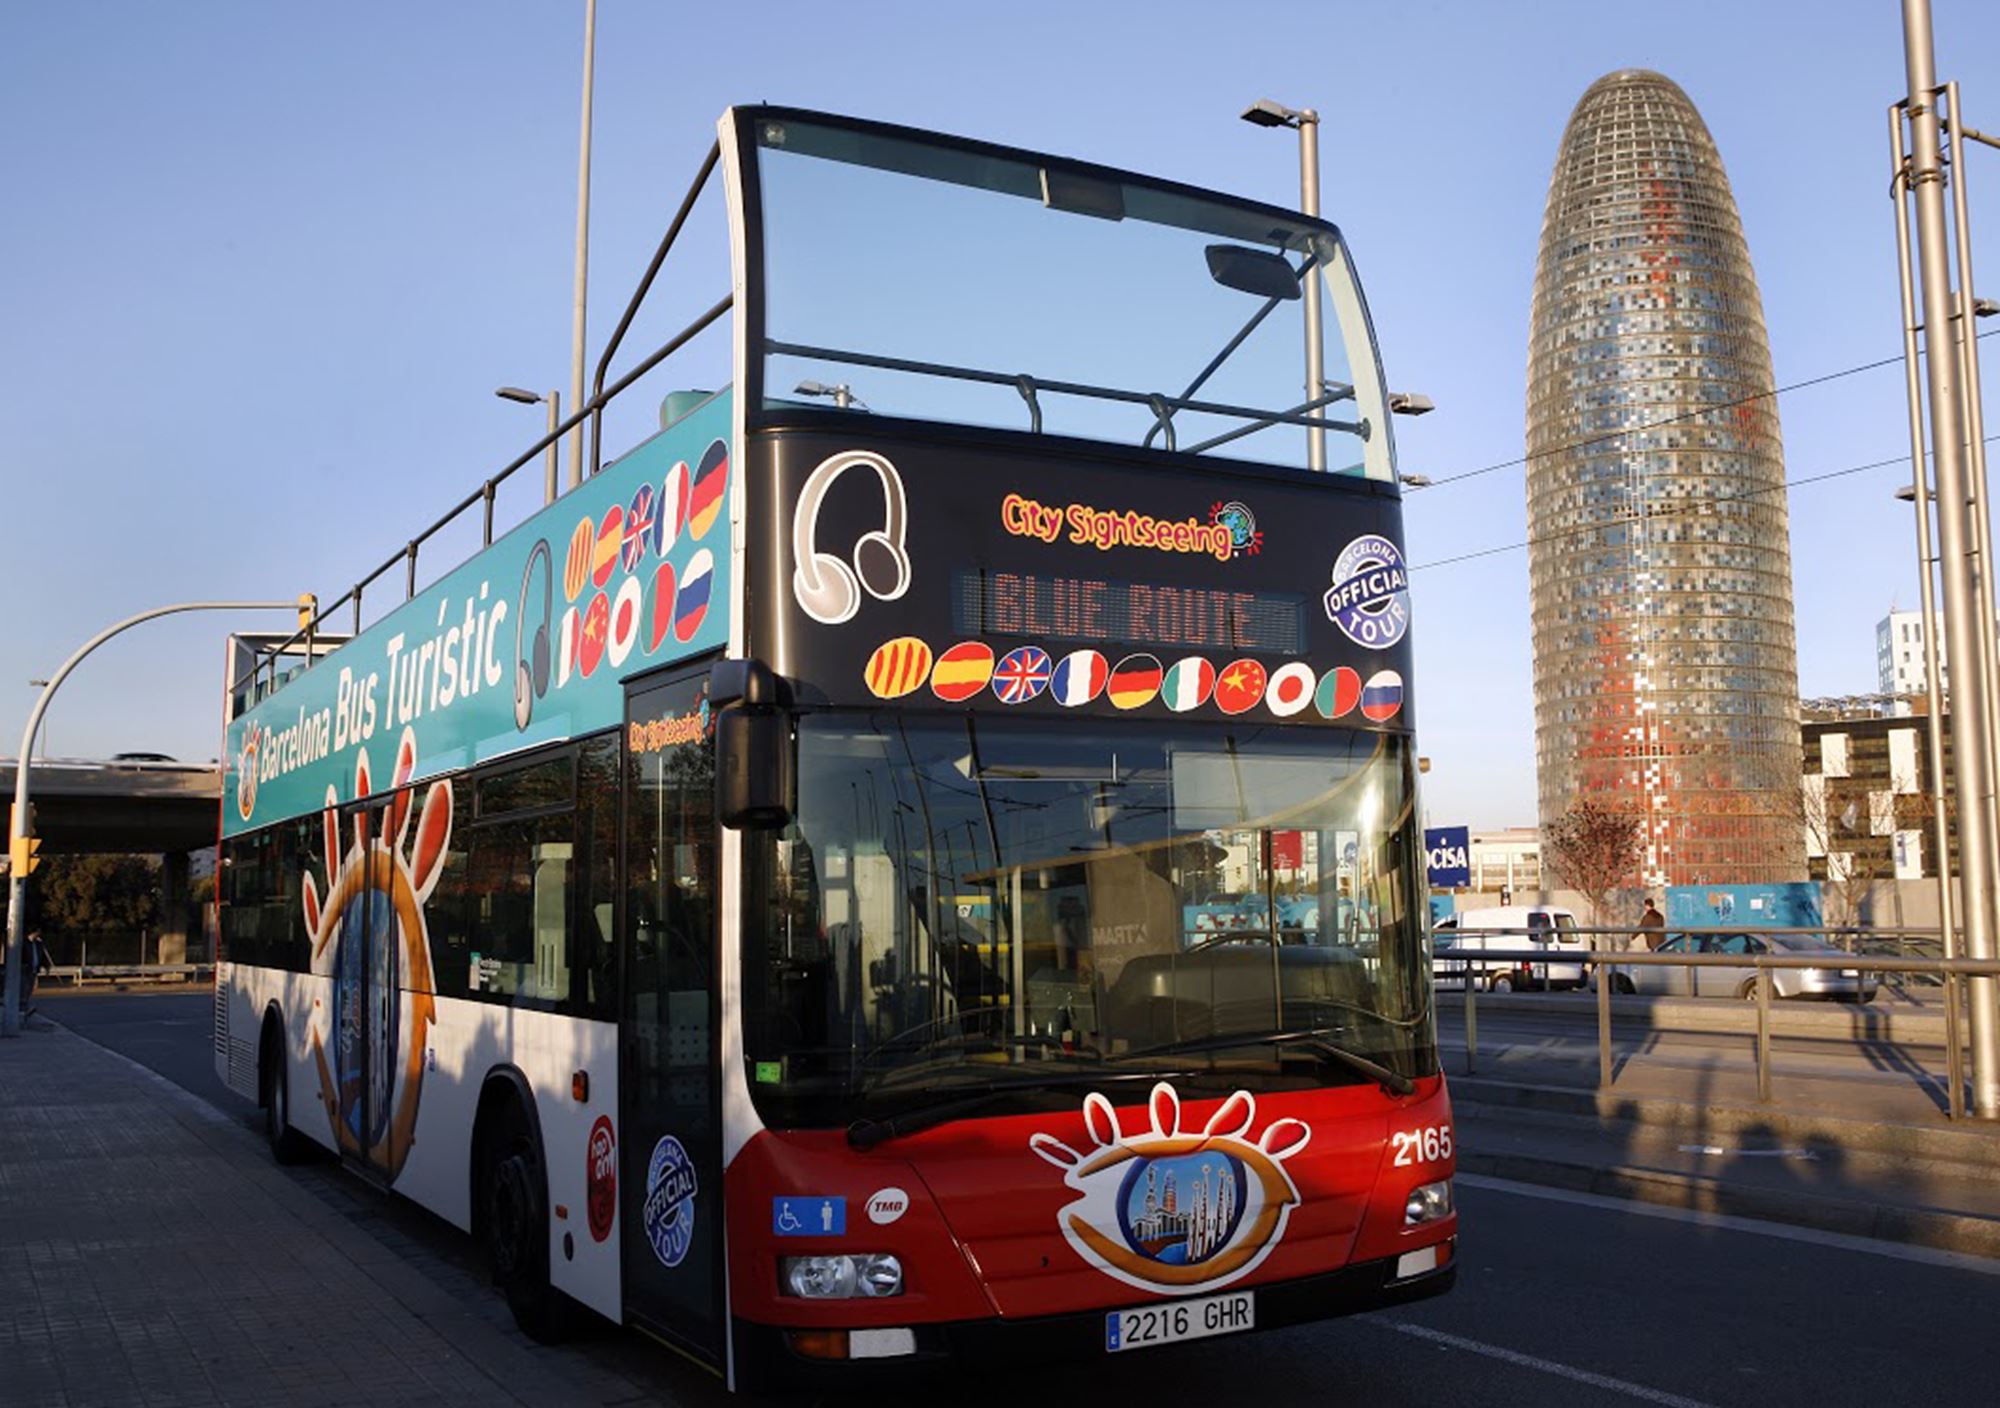 kaufen buchung tickets besucht Fahrkarte karte Touristikbus City Sightseeing Barcelona